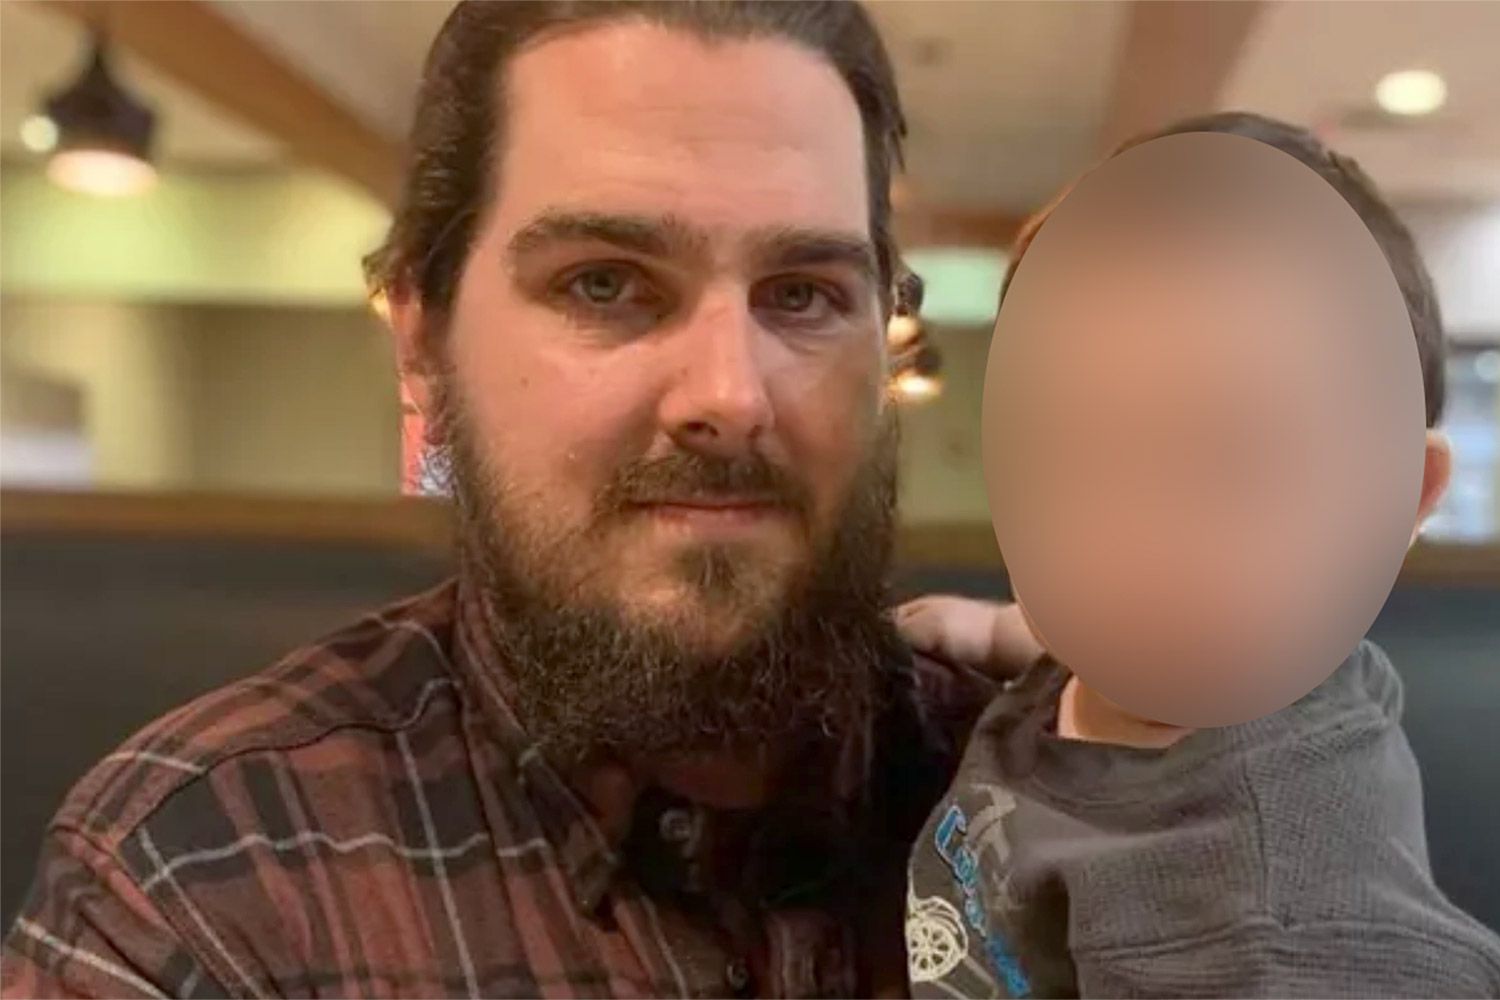 Texas Vater von 3 mit einem anderen Baby auf dem Weg wird bei angeblicher Straßenwut-Schießerei getötet